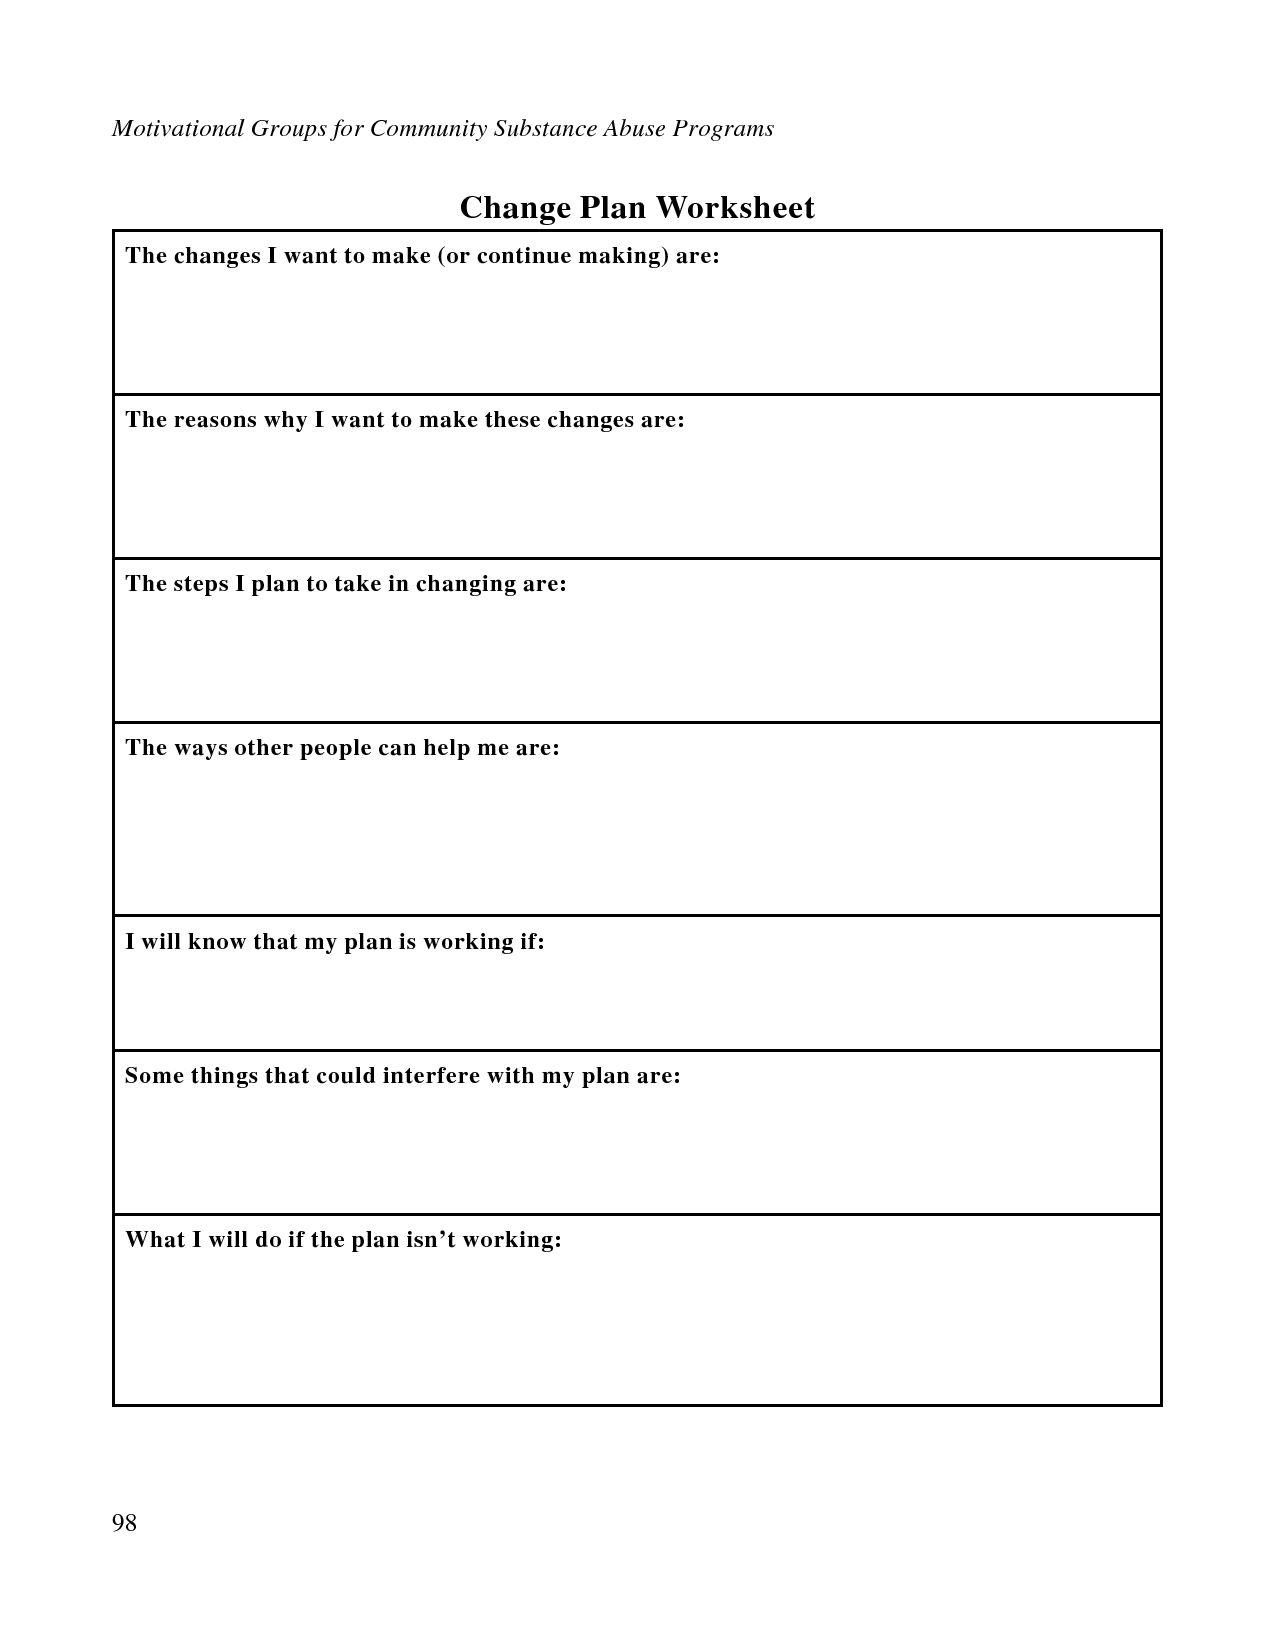 Substance Abuse Change Plan Worksheet Image